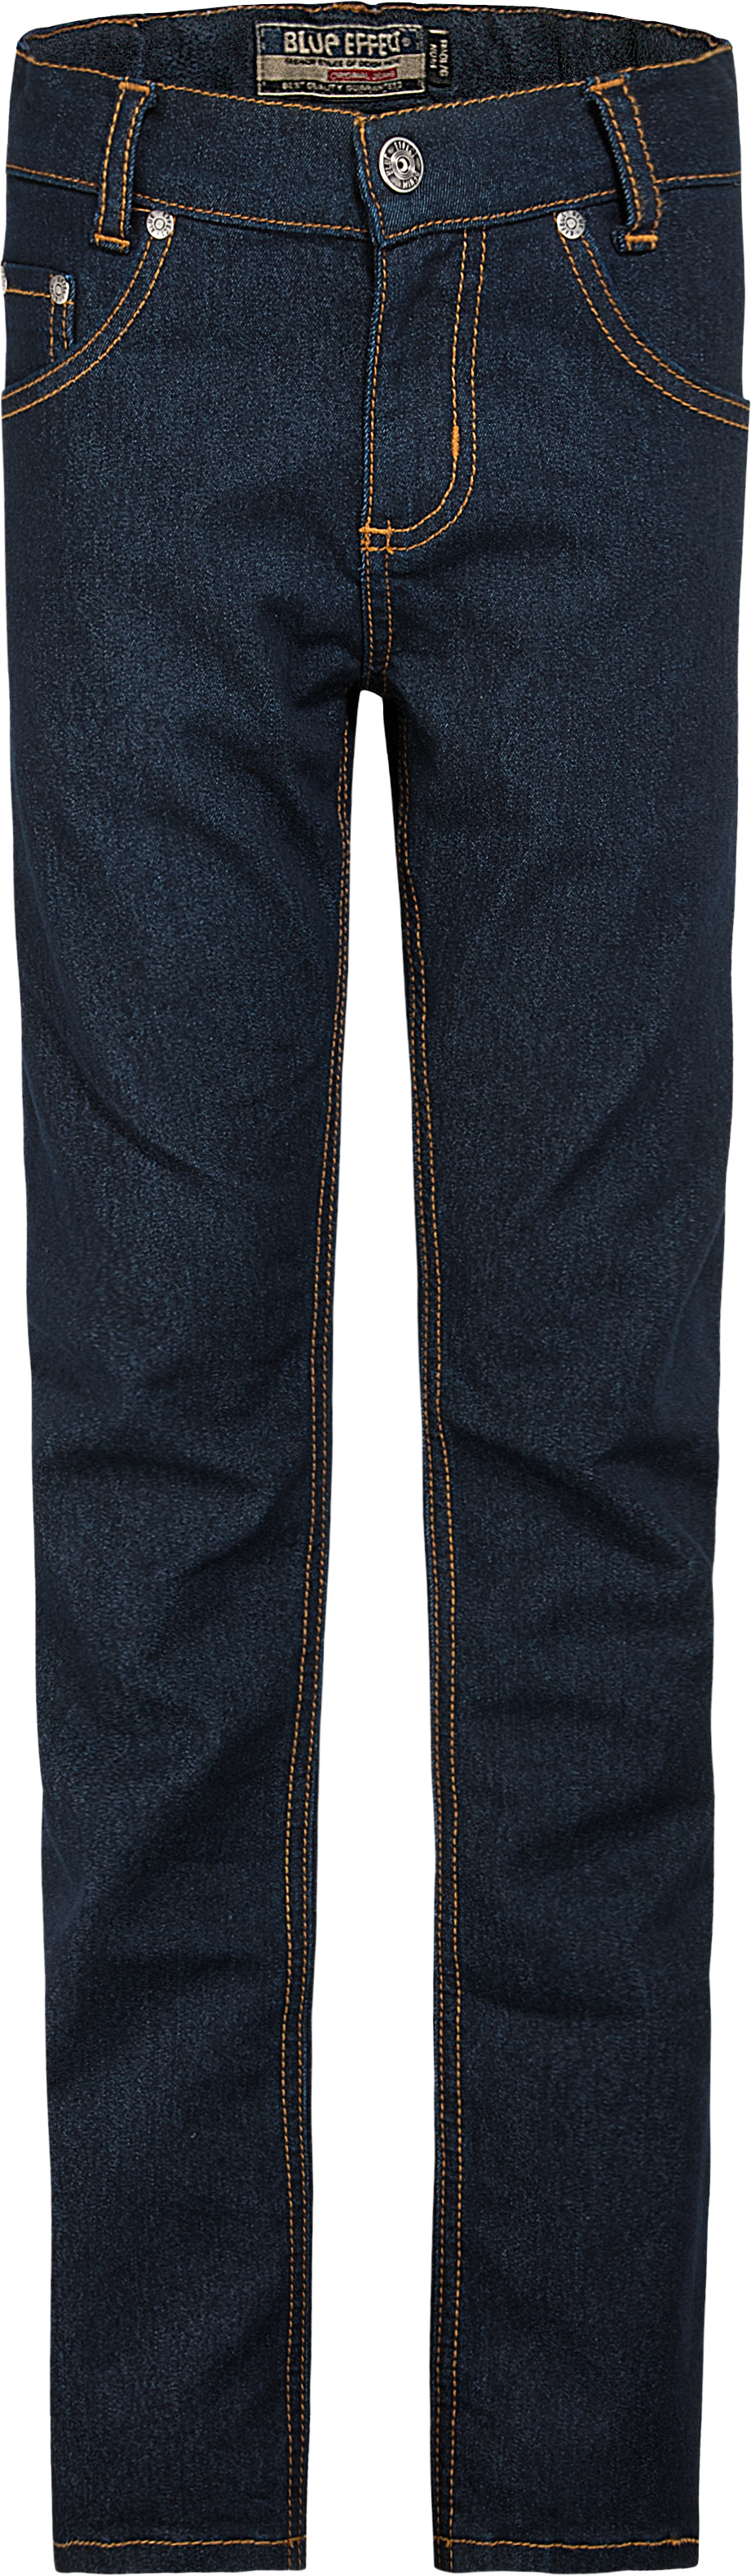 0229-NOS Boys Jeans Skinny verfügbar in Slim,Normal,Wide